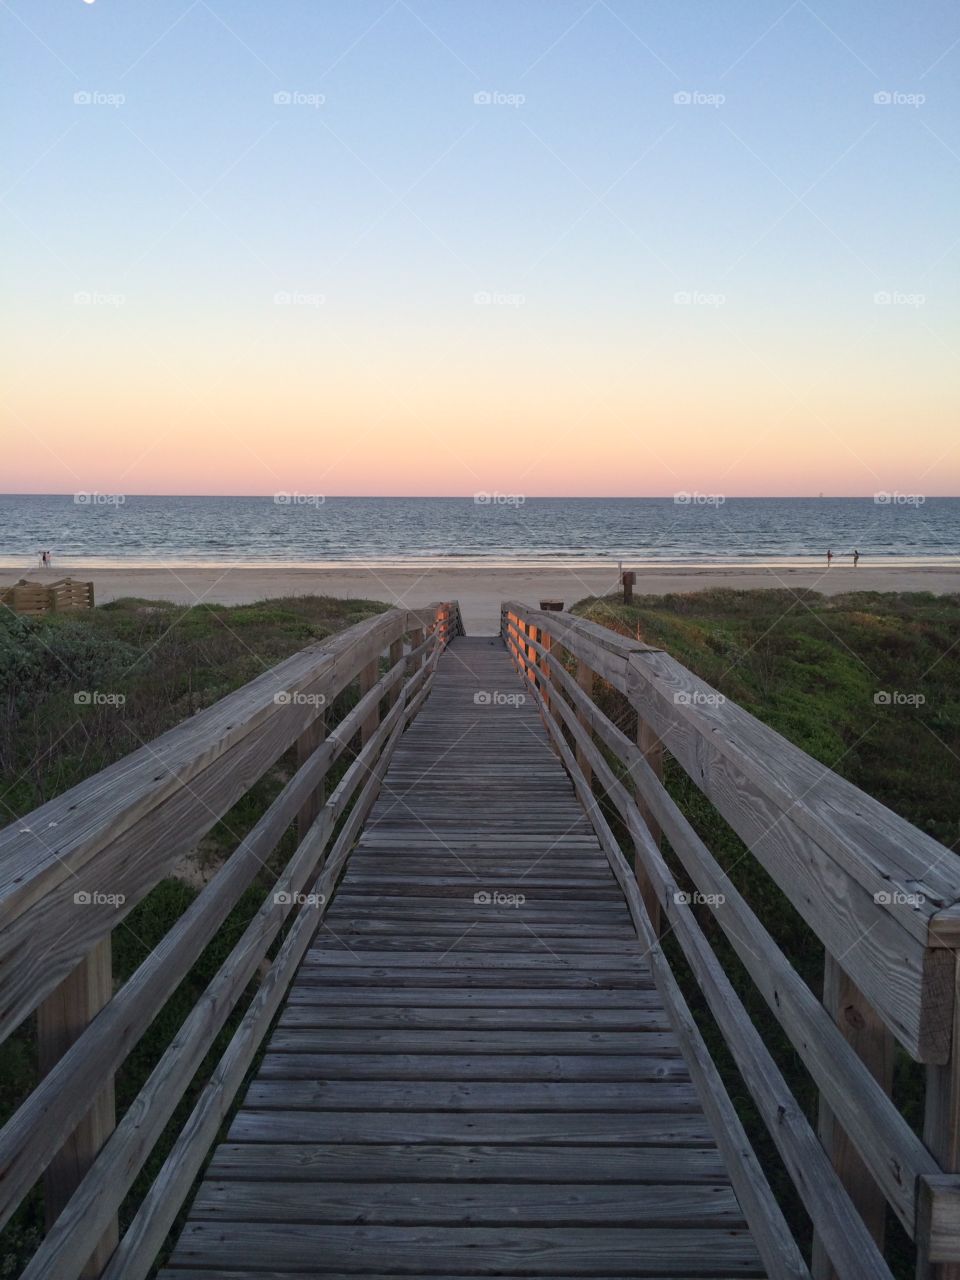 Long boardwalk. Boardwalk to the beach